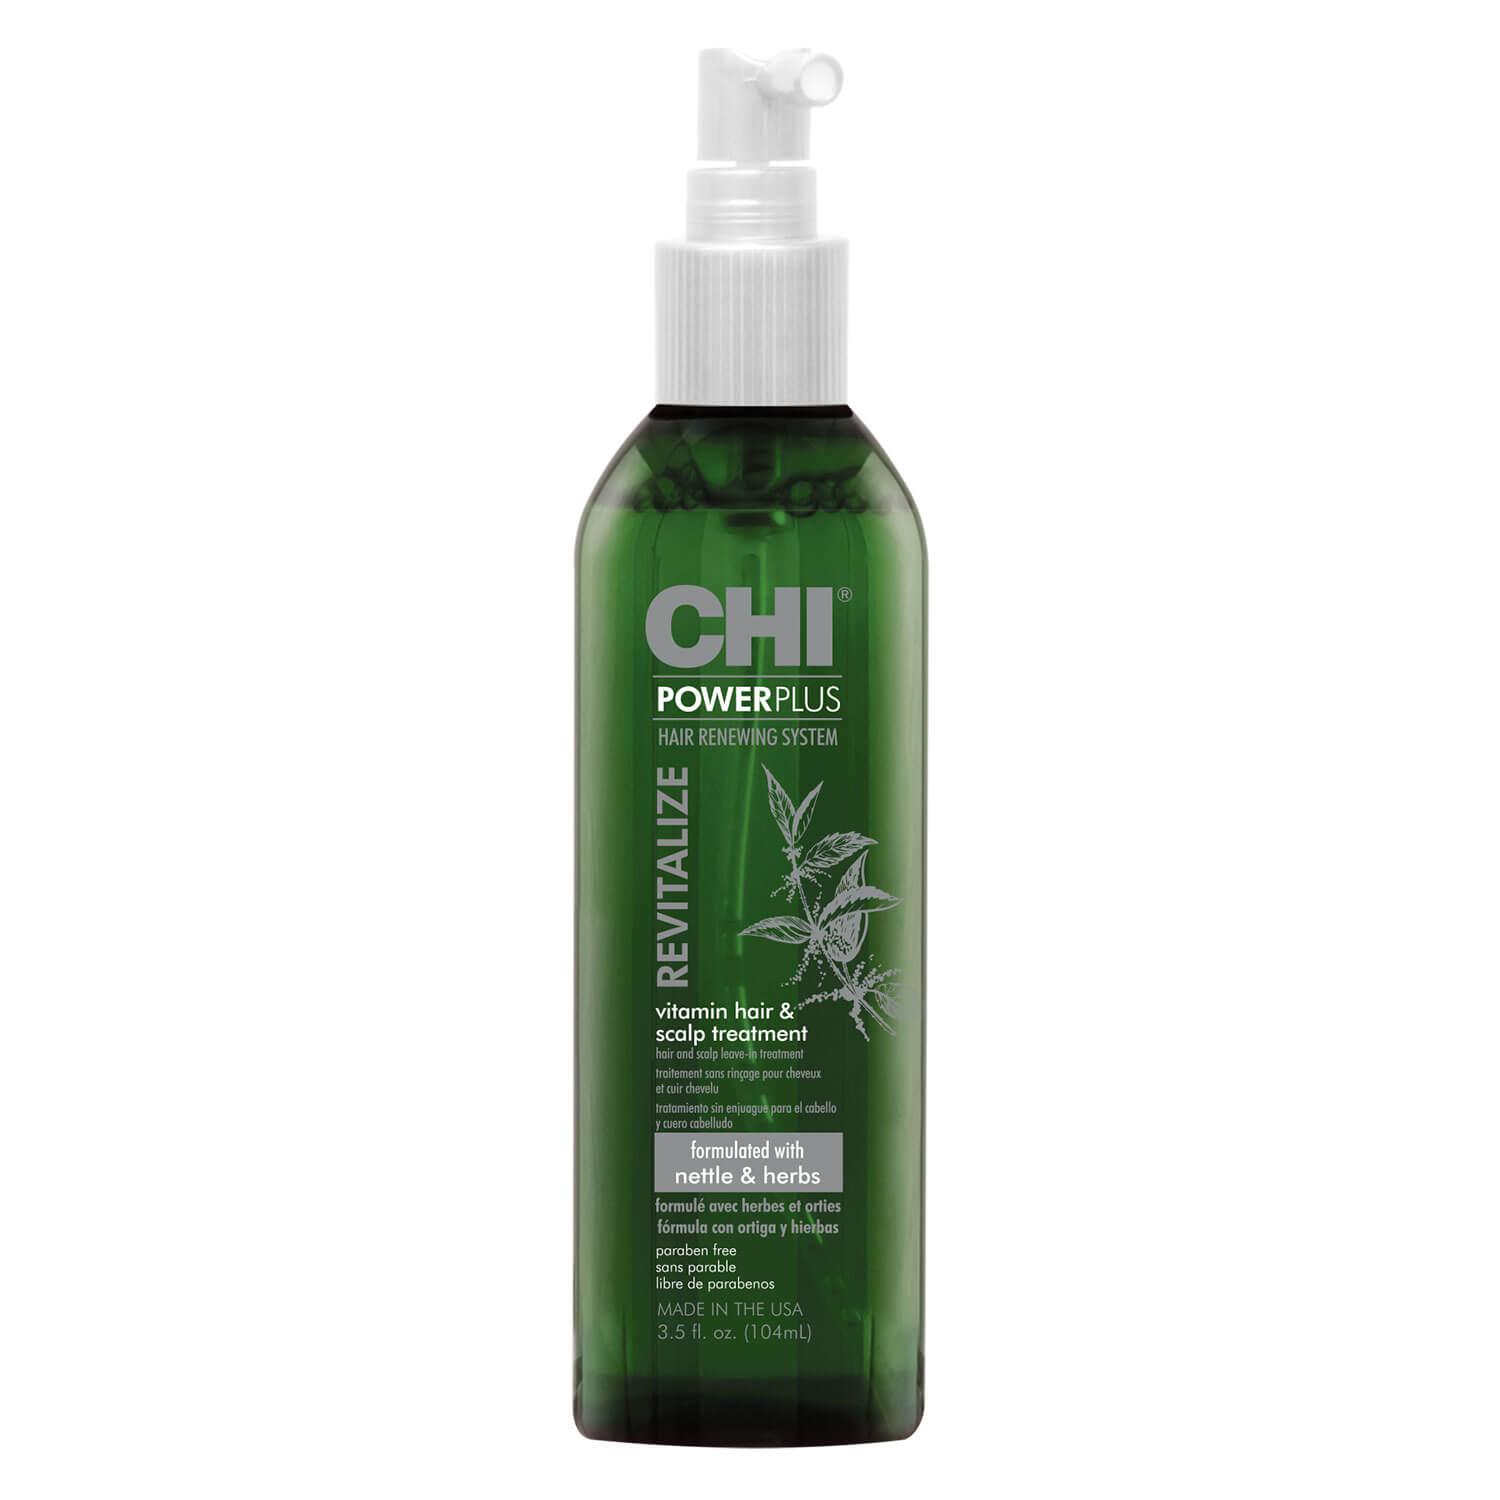 CHI PowerPlus - Vitamin Hair & Scalp Treatment